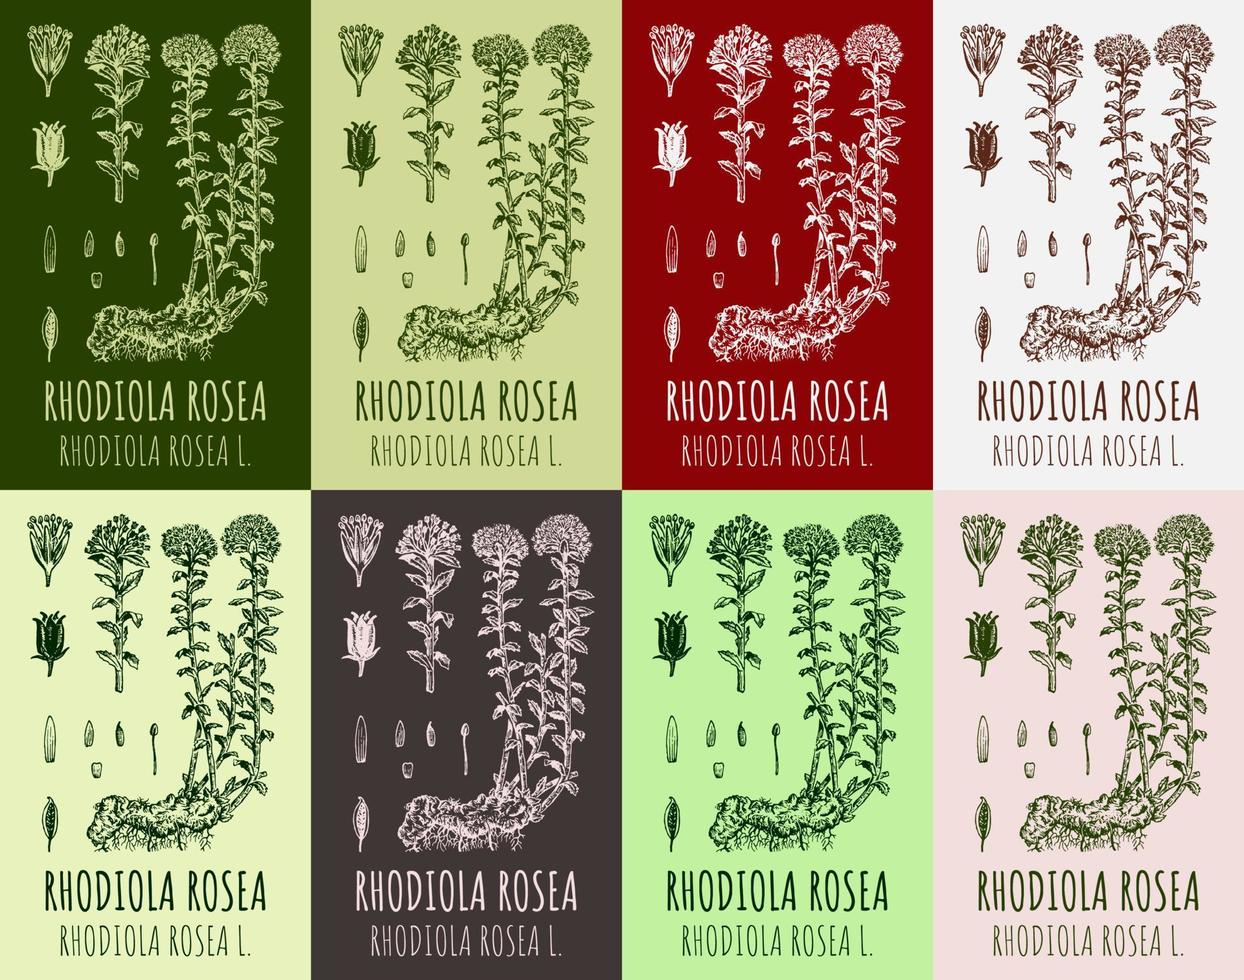 conjunto de desenhos vetoriais rhodiola rosea em cores diferentes. mão desenhada ilustração. nome latino rhodiola rosea l. vetor